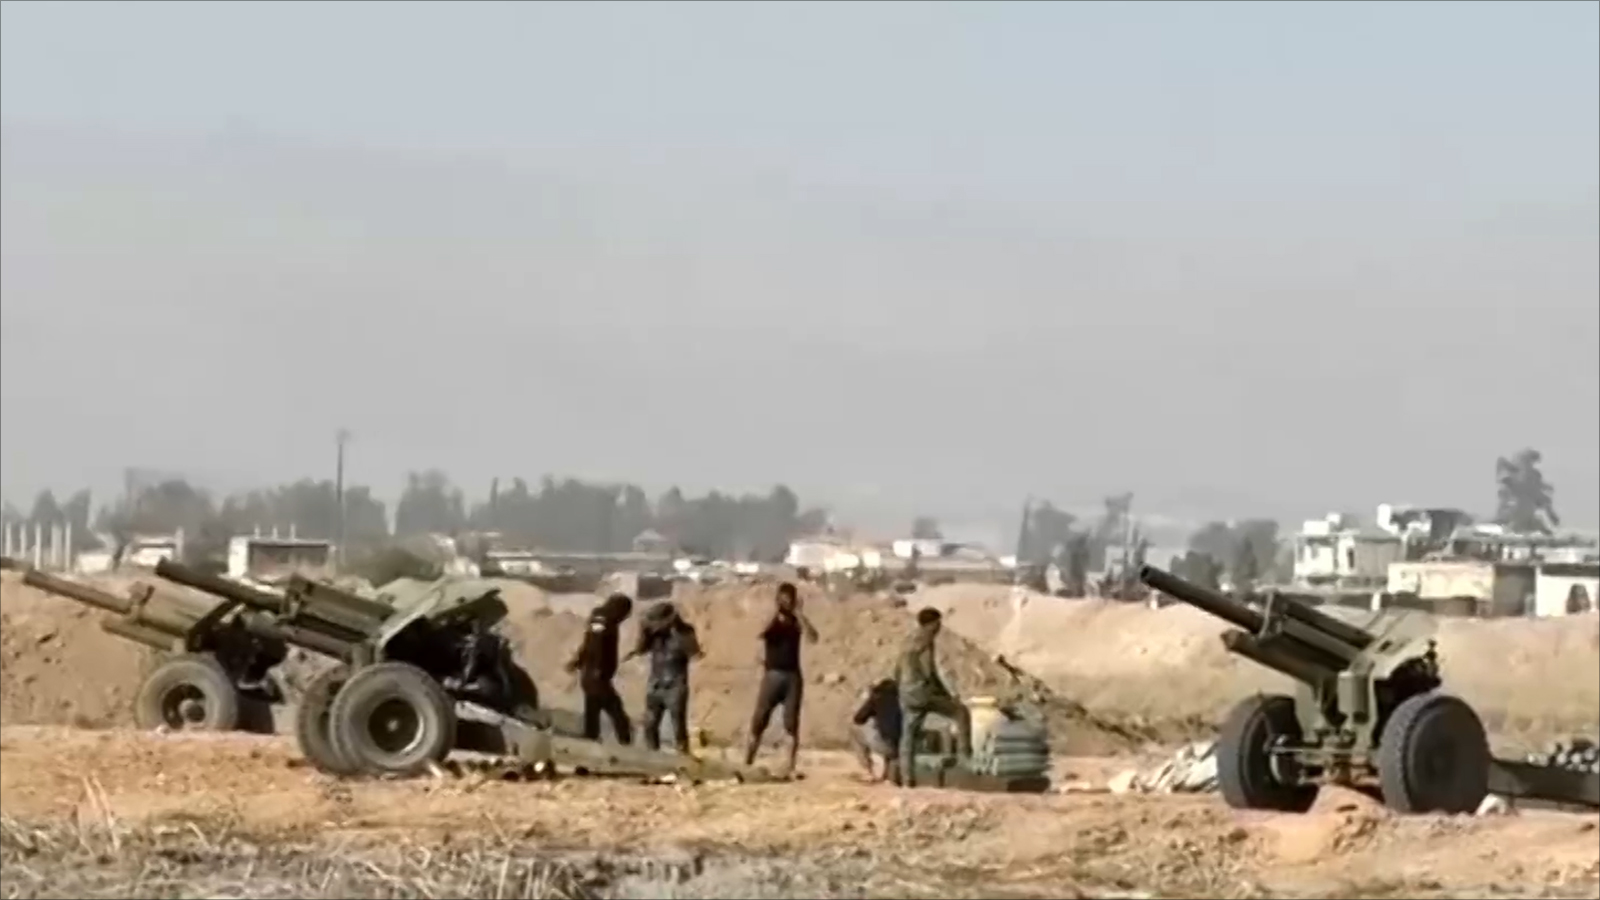 تقدم قوات النظام في الغوطة تراجع بعد أن وصلت إلى مشارف المدن حيث وجدت مقاومة من المعارضة المسلحة (الجزيرة)